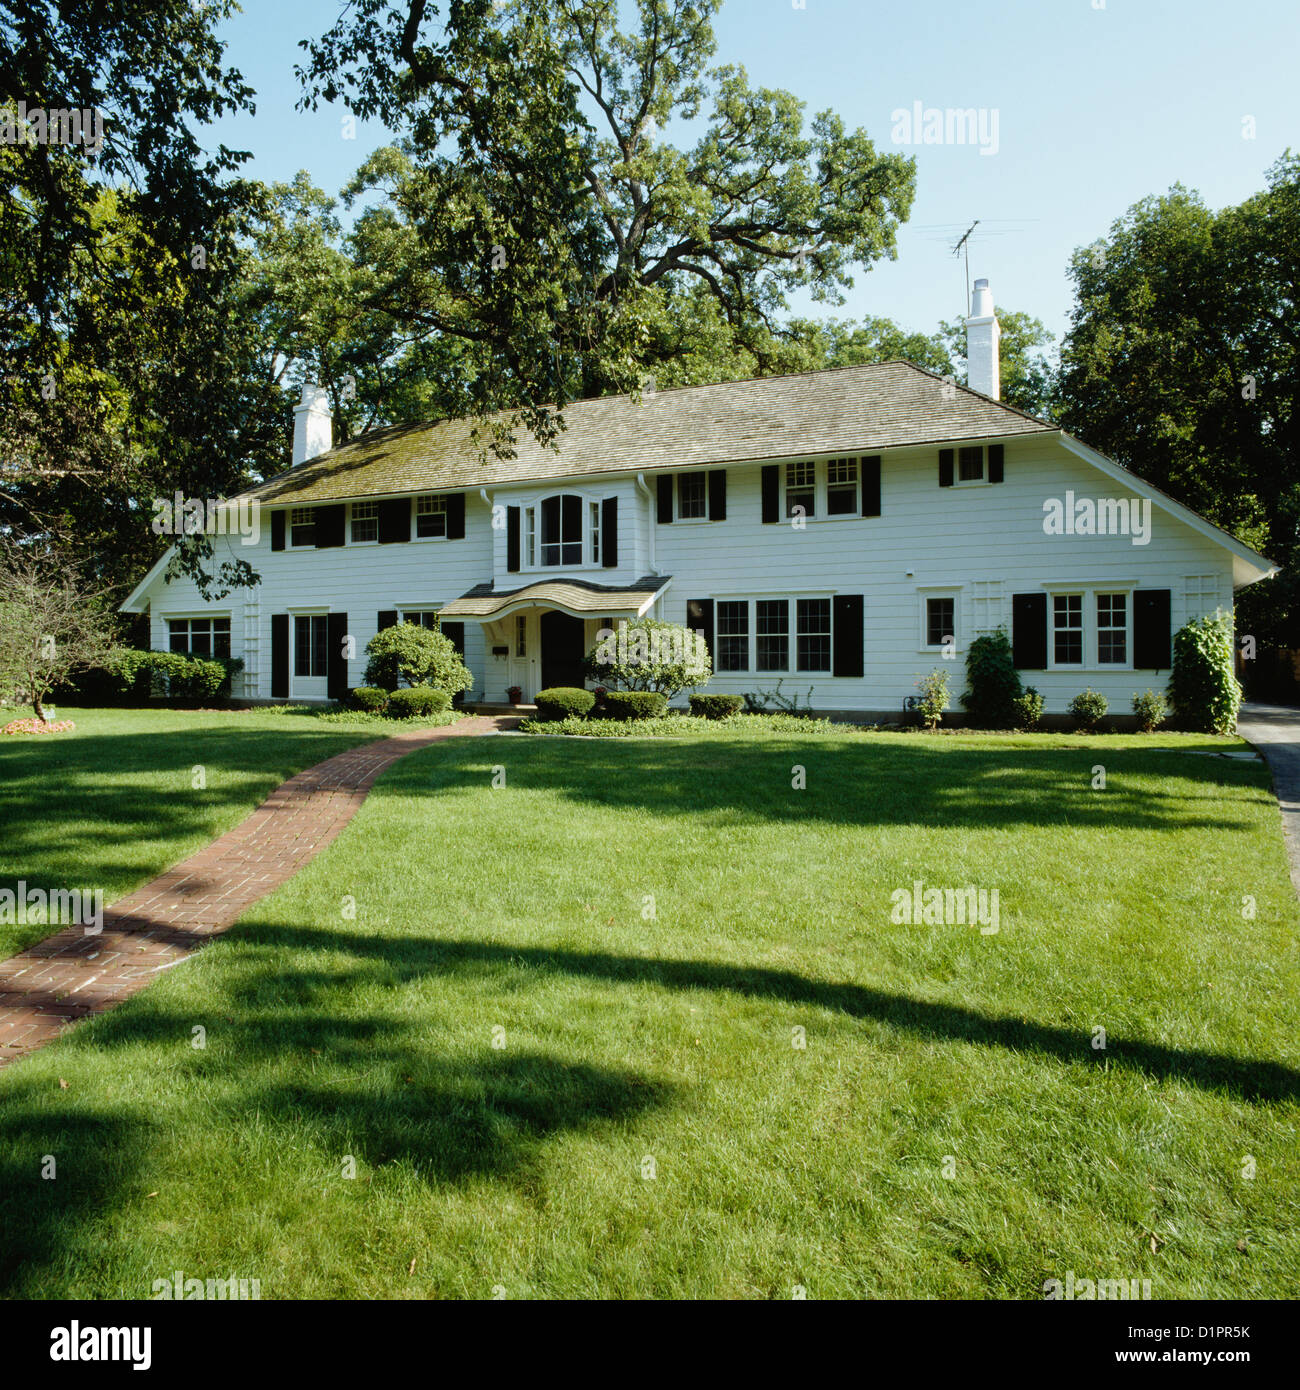 Exteriores: gran simétrico elegante marco blanco house, gran césped delantero con pasarela de ladrillo Foto de stock